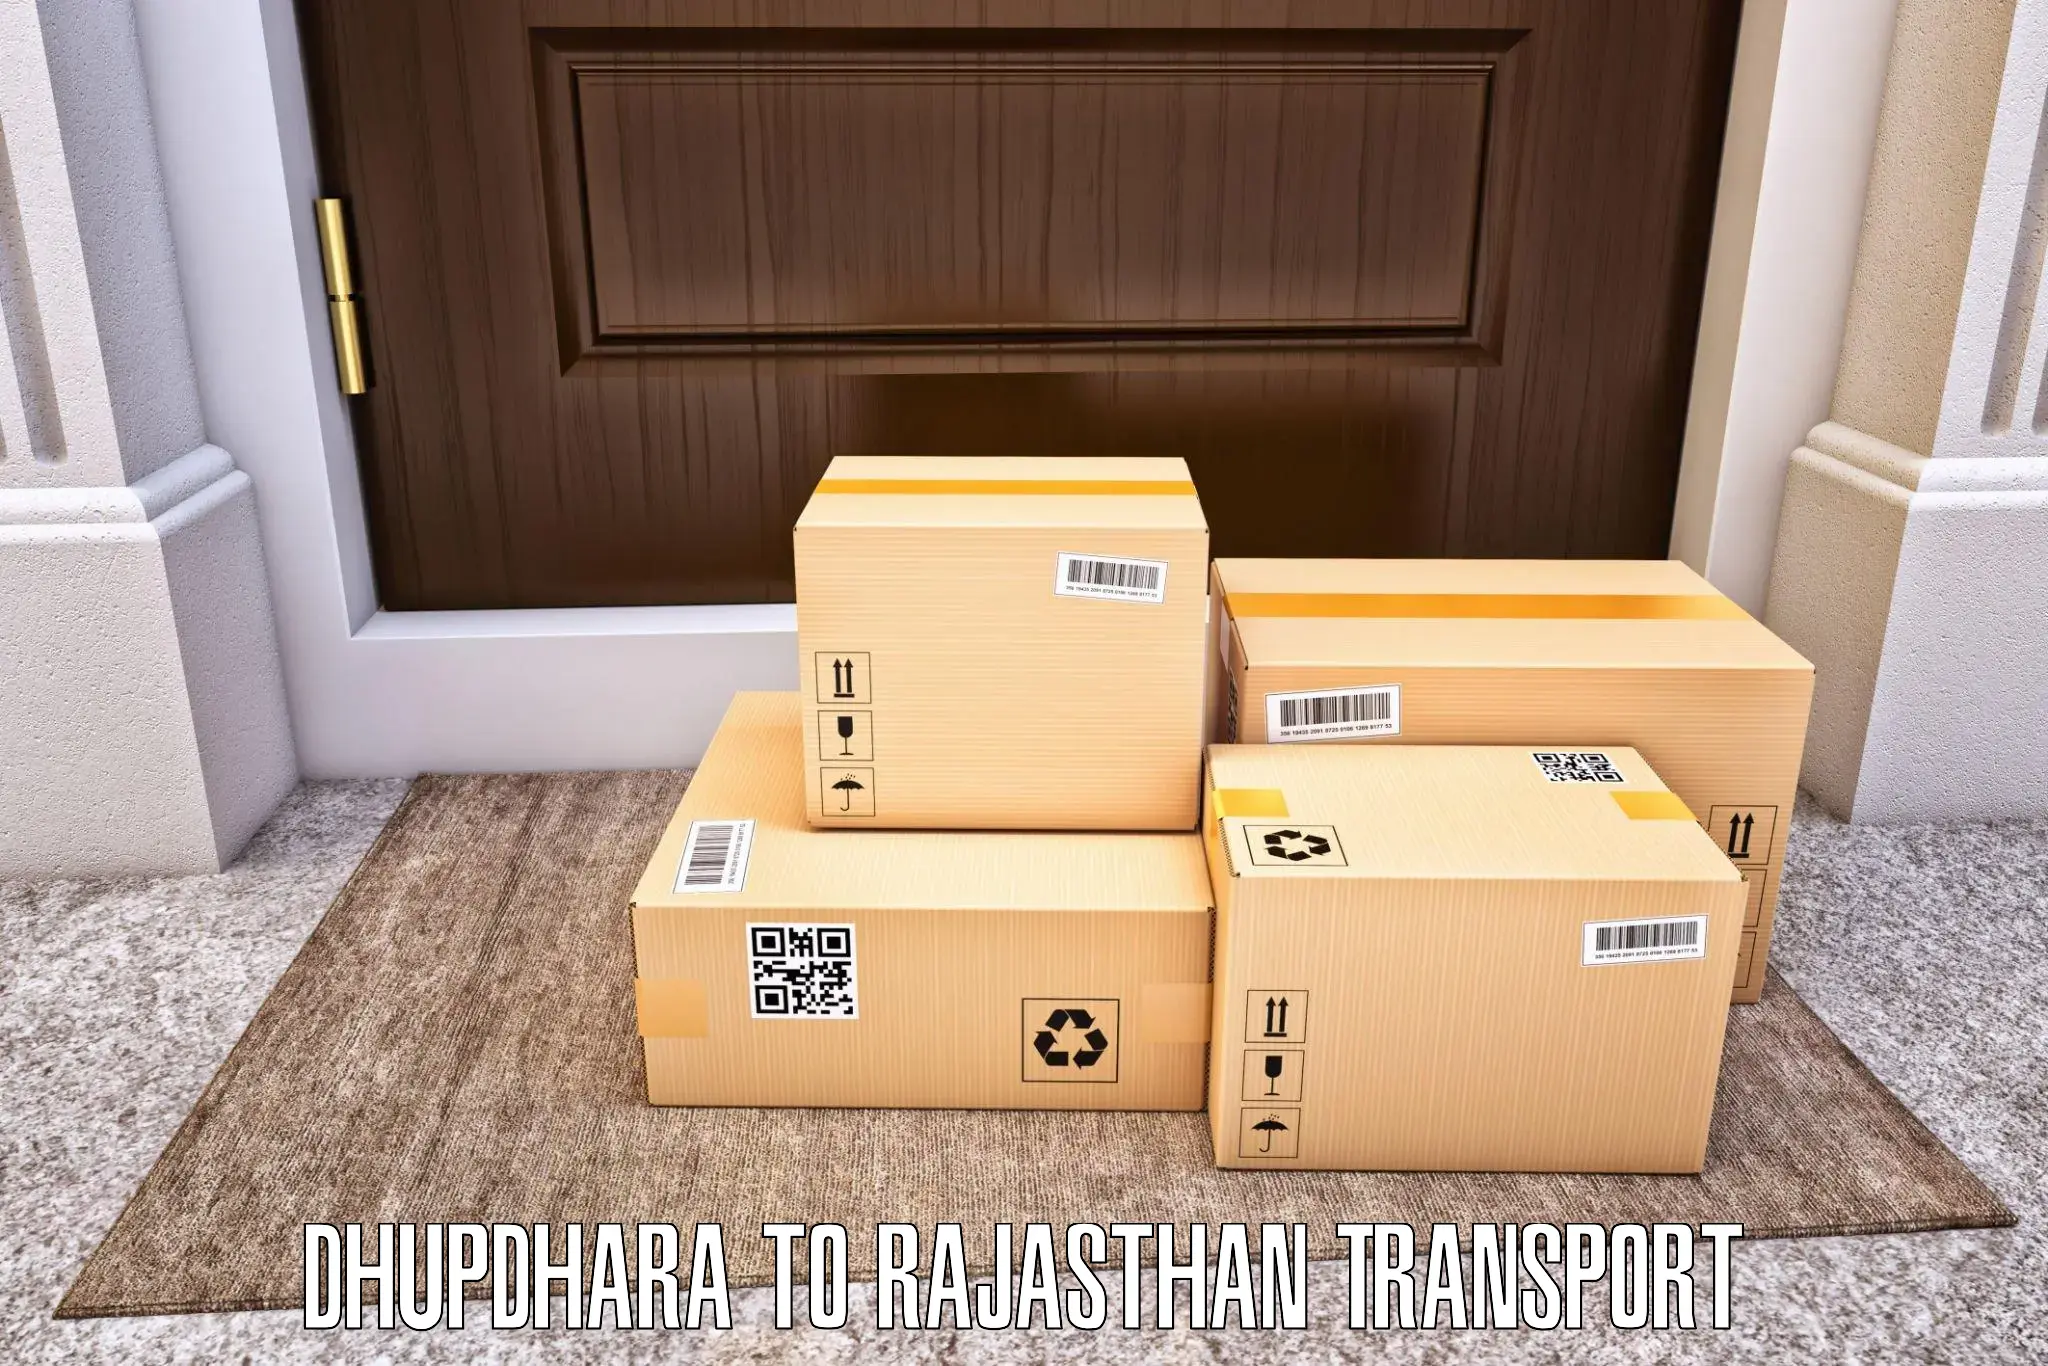 Air freight transport services Dhupdhara to Kotputli